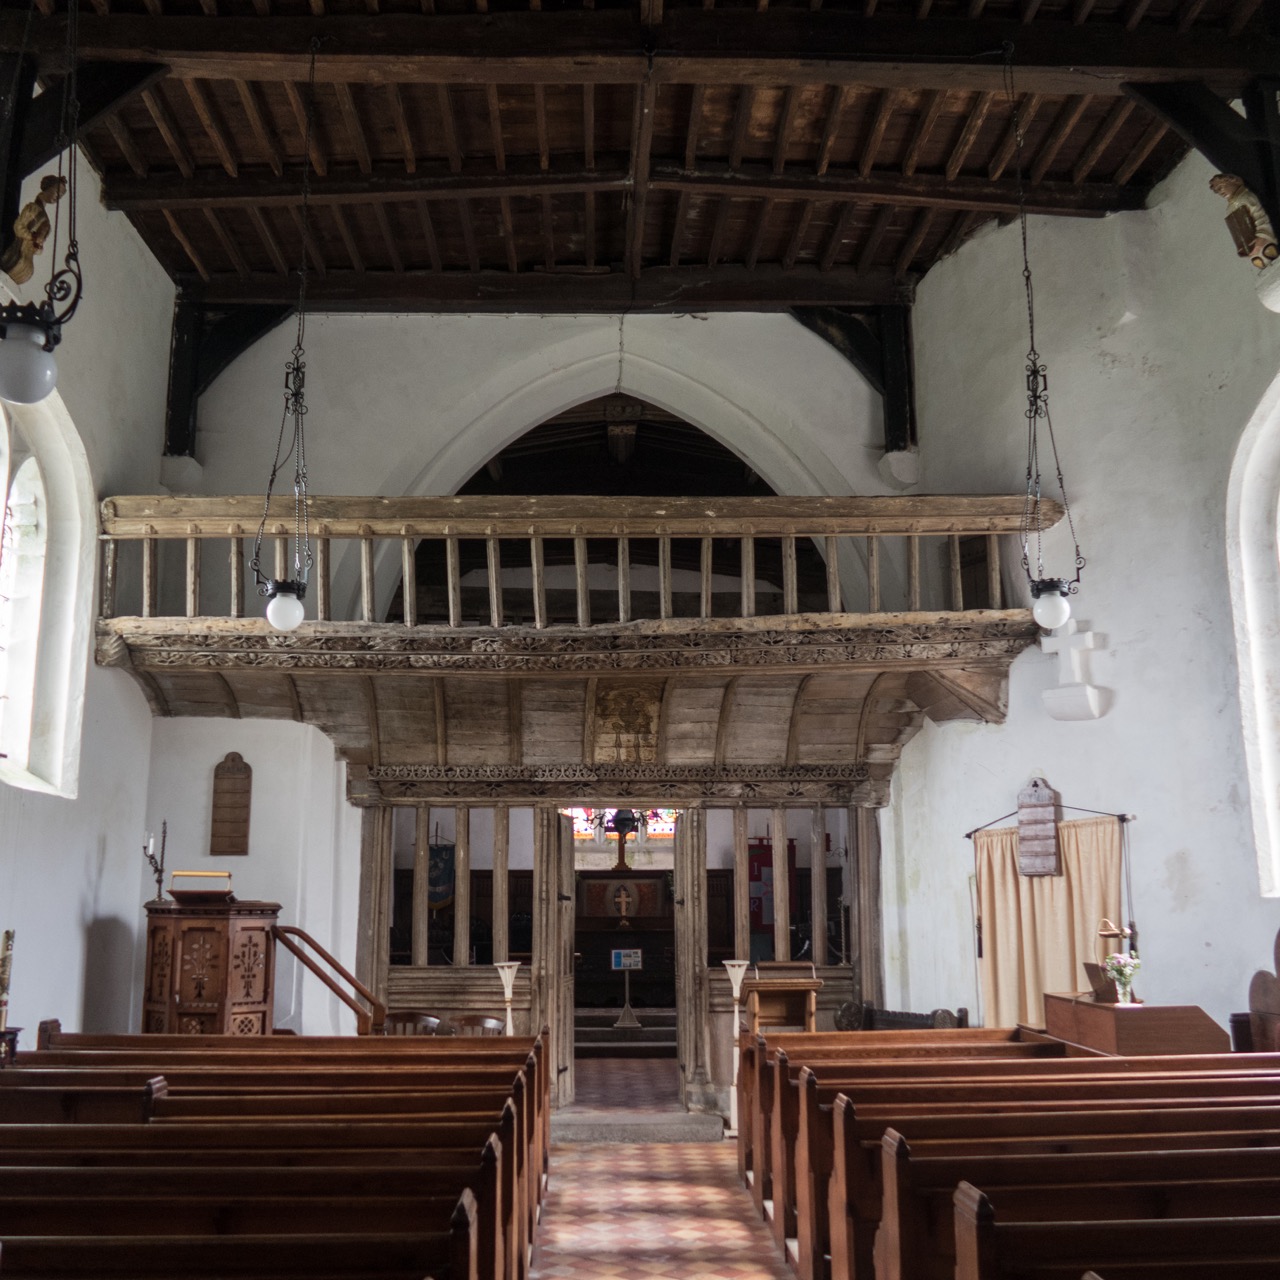 St Eilian’s Church, interior view